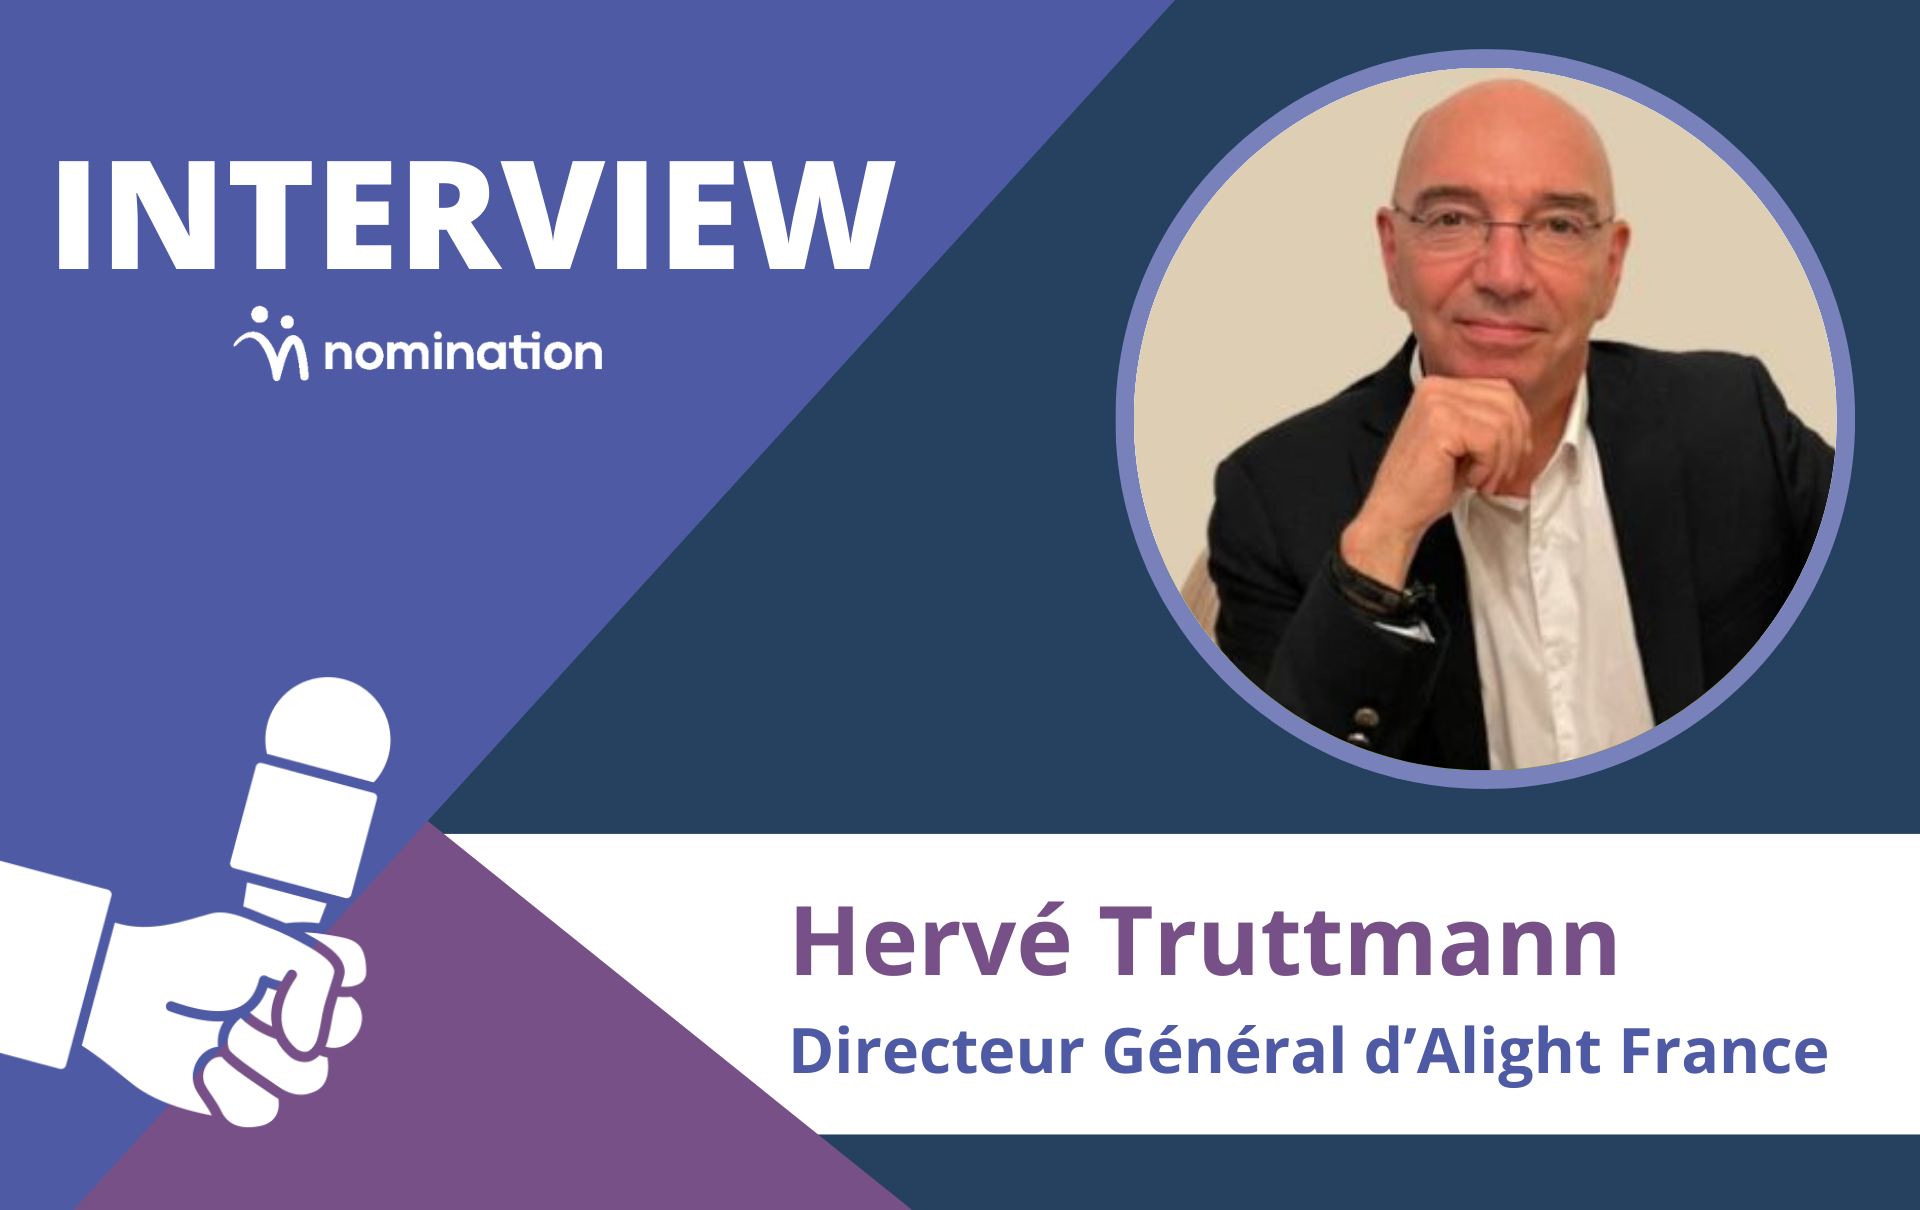 Hervé Truttmann, Directeur Général d’Alight France